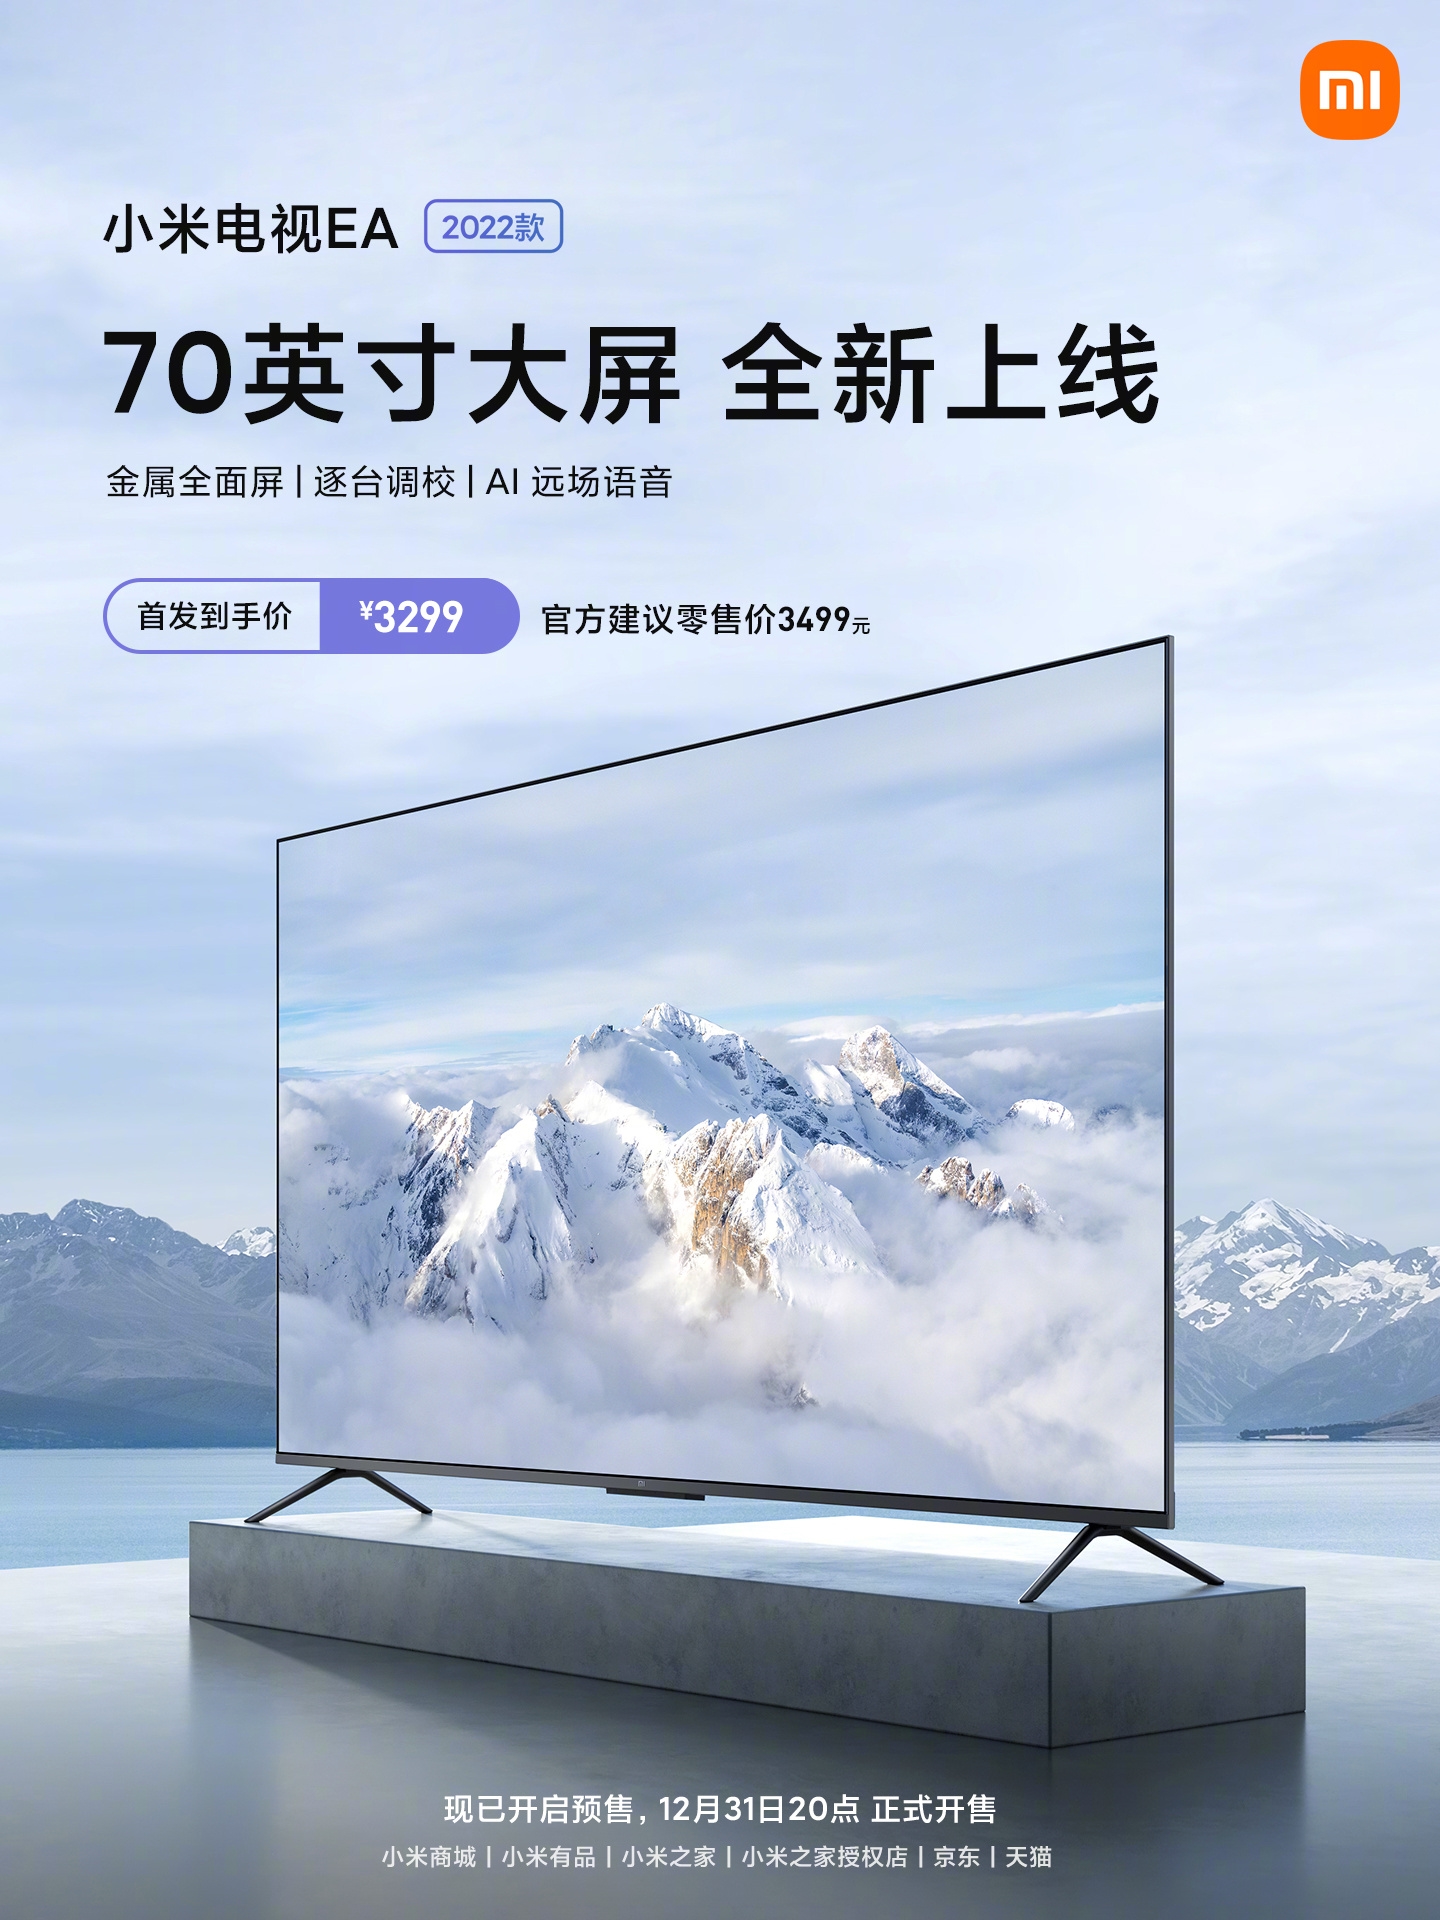 Xiaomi Mi TV EA70 2022 Pre-sale in China